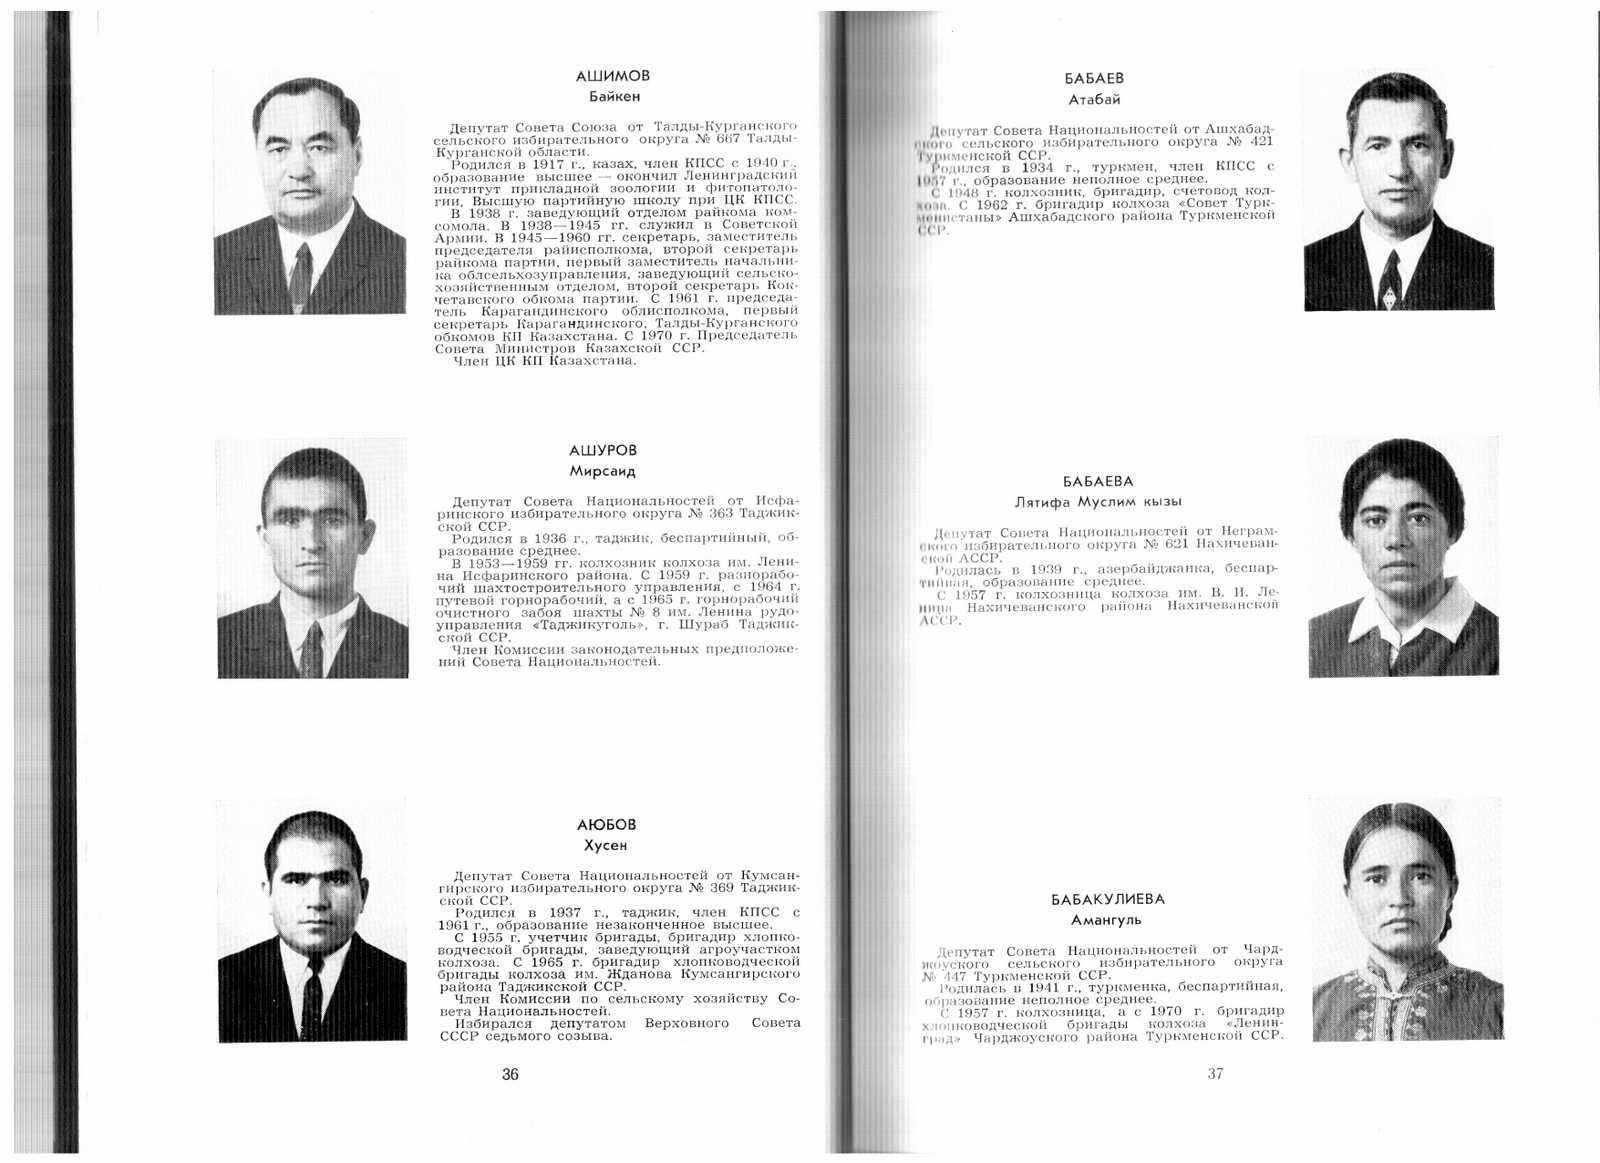 Депутаты Верховного Совета СССР 8-го созыва. (Биографии) М., 1970